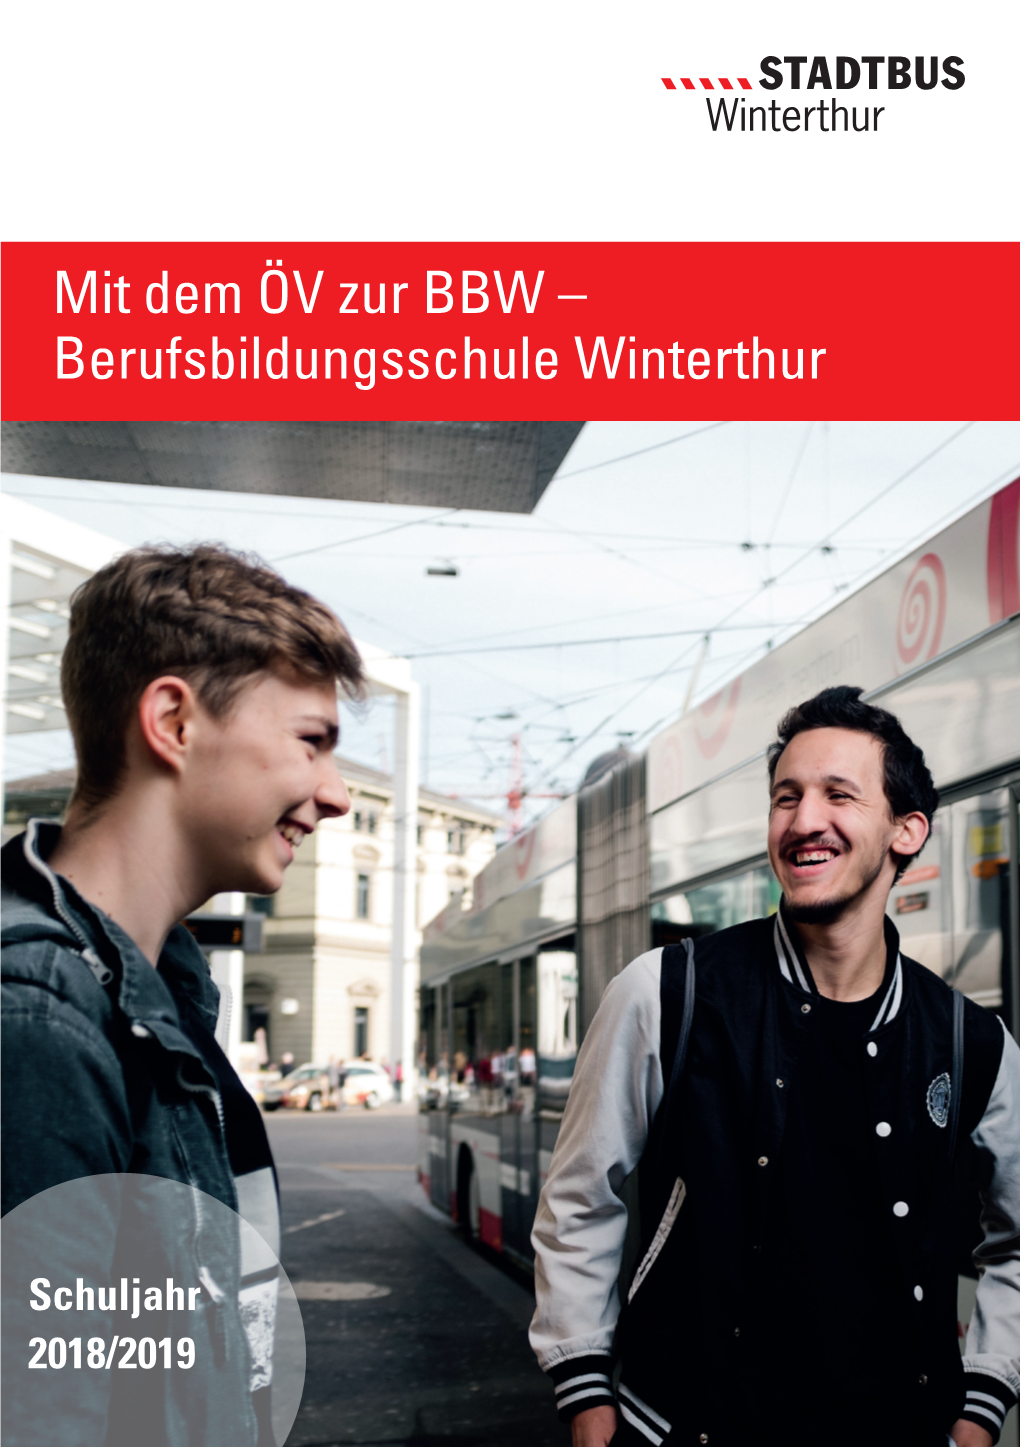 Mit Dem ÖV Zur BBW – Berufsbildungsschule Winterthur